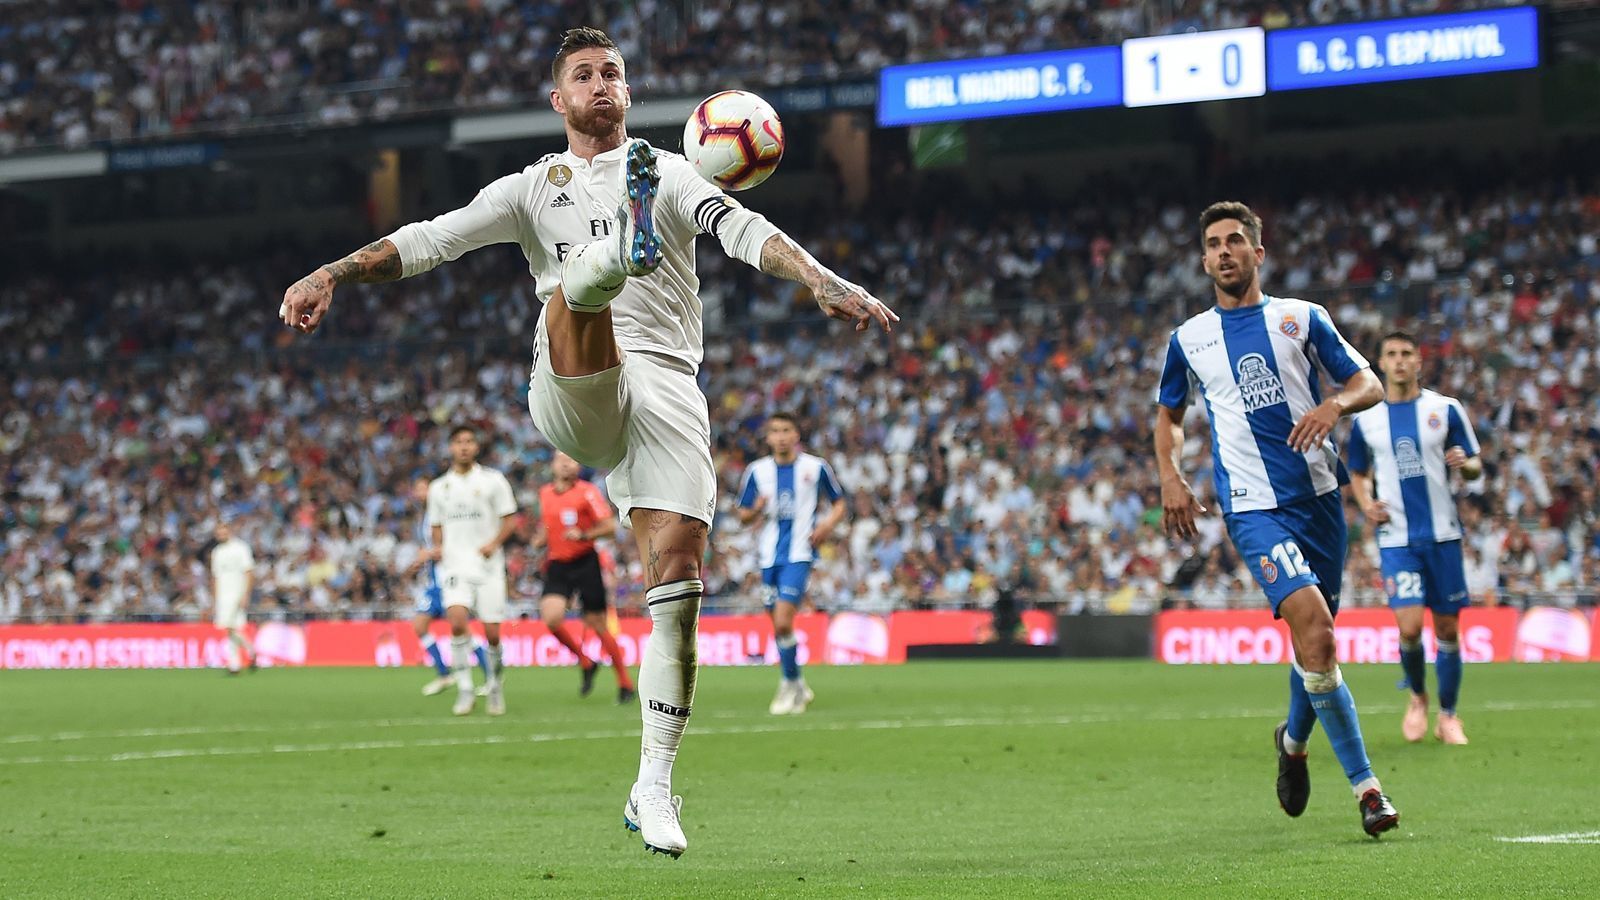 
                <strong>Sergio Ramos (Spanien)</strong><br>
                Geburtsdatum: 30. März 1986Verein: Real MadridPosition: InnenverteidigerTitel 2018: Champions-League-SiegerWM-Einsätze/-Tore: 4/0
              